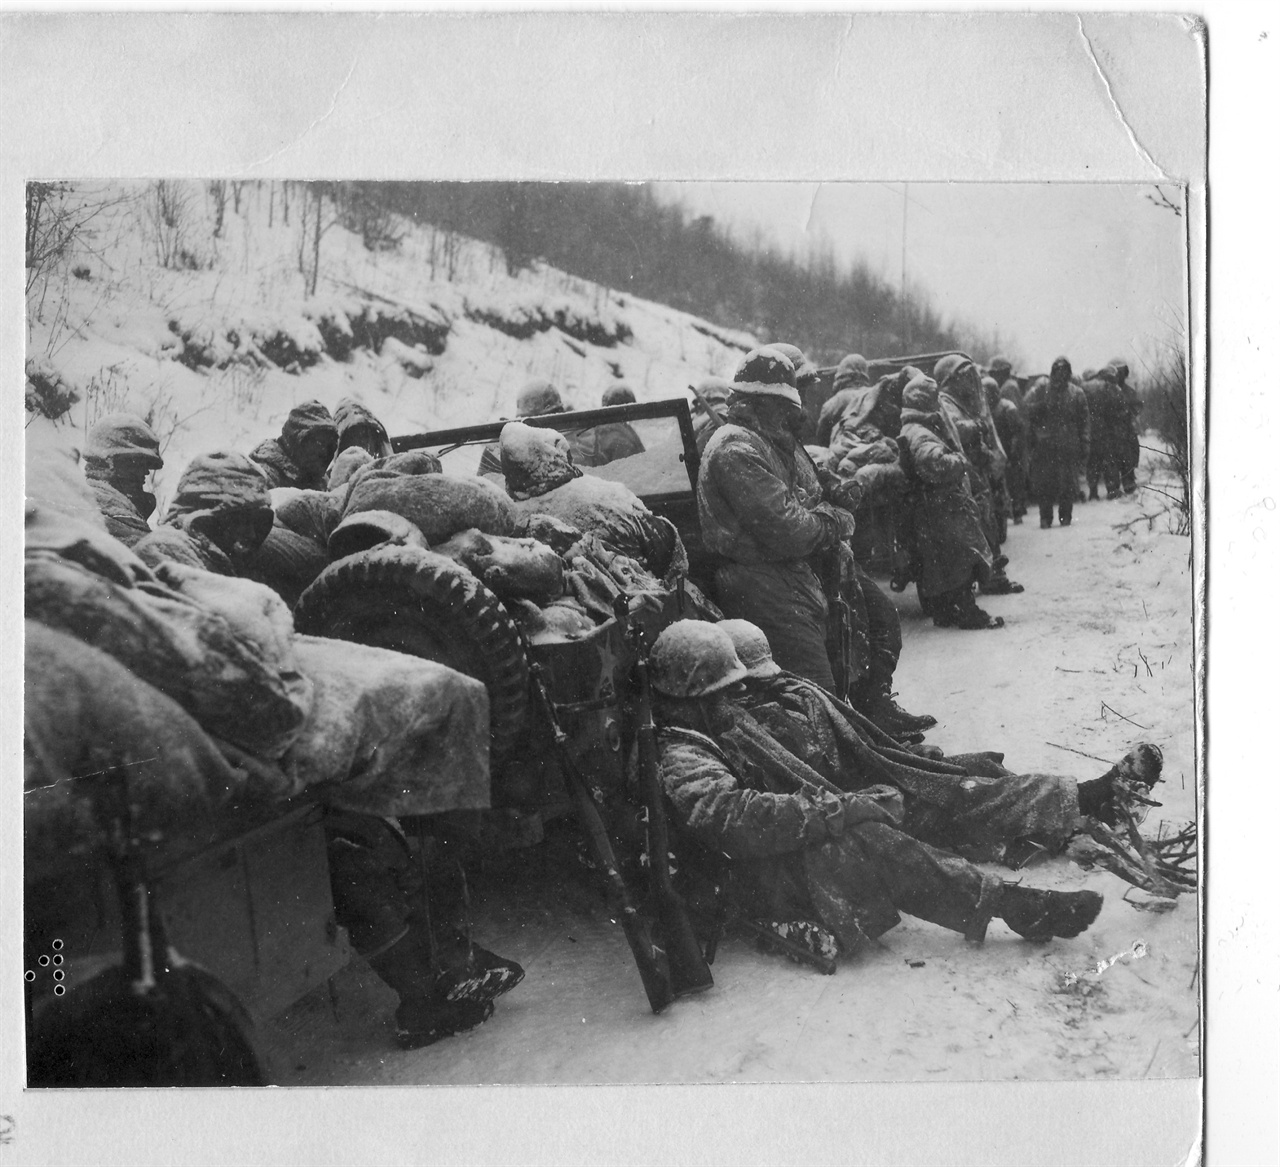  1950. 11. 29. 중국군 참전으로 후퇴하던 유엔군들이 추위와 졸음에 지쳐 길가에서 잠시 쉬고 있다. 